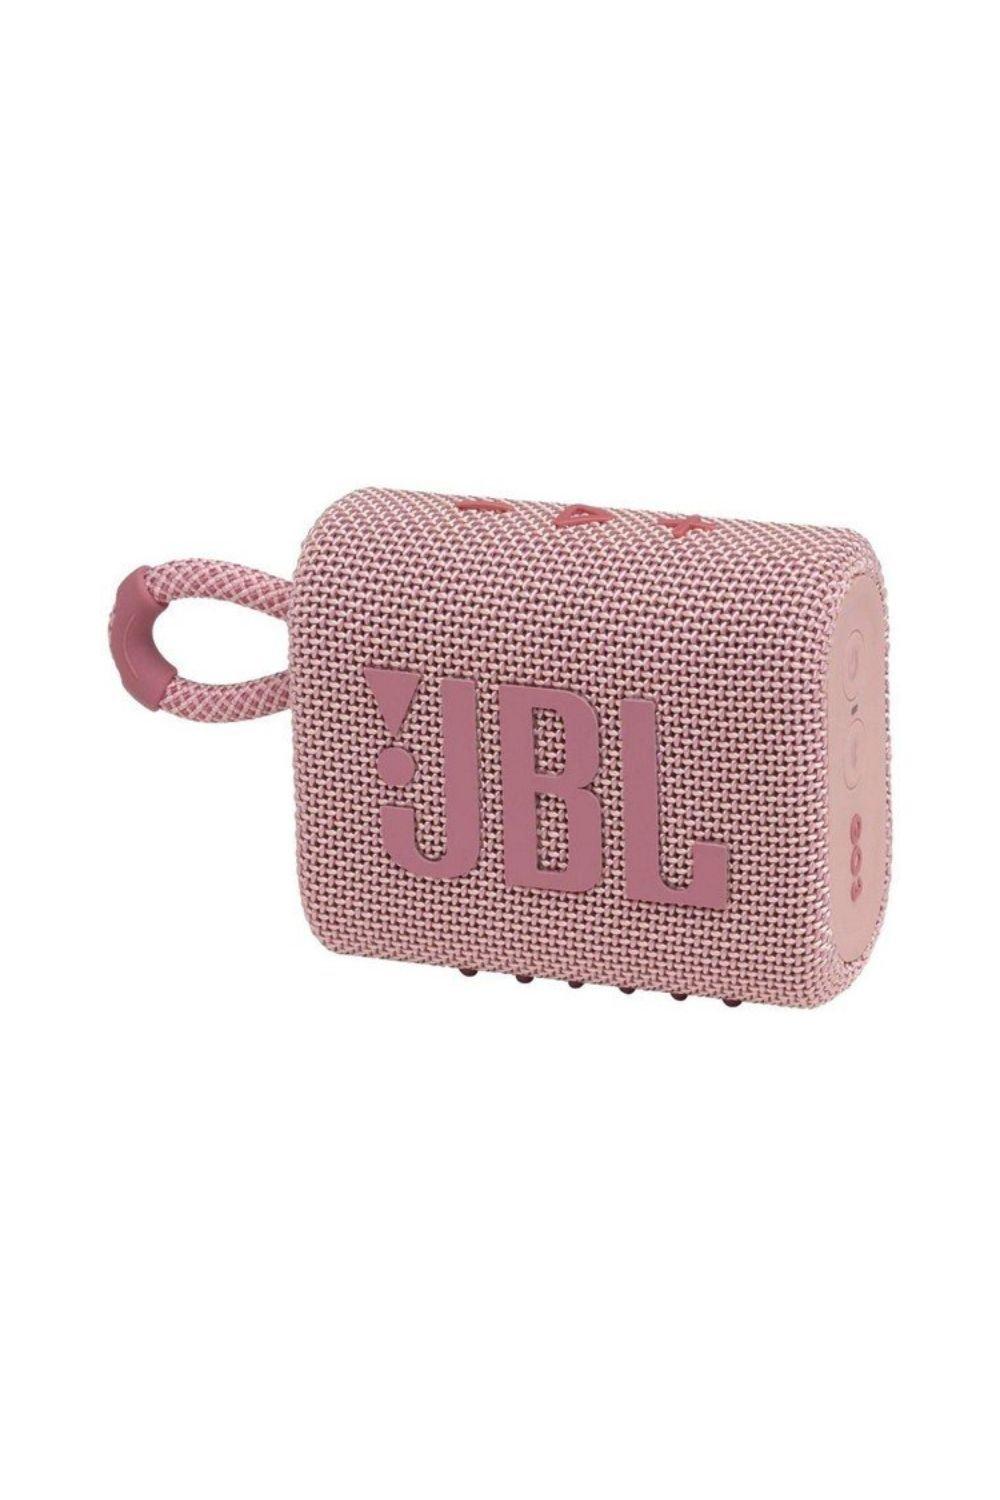 JBL GO3 Wireless Speaker - Pink